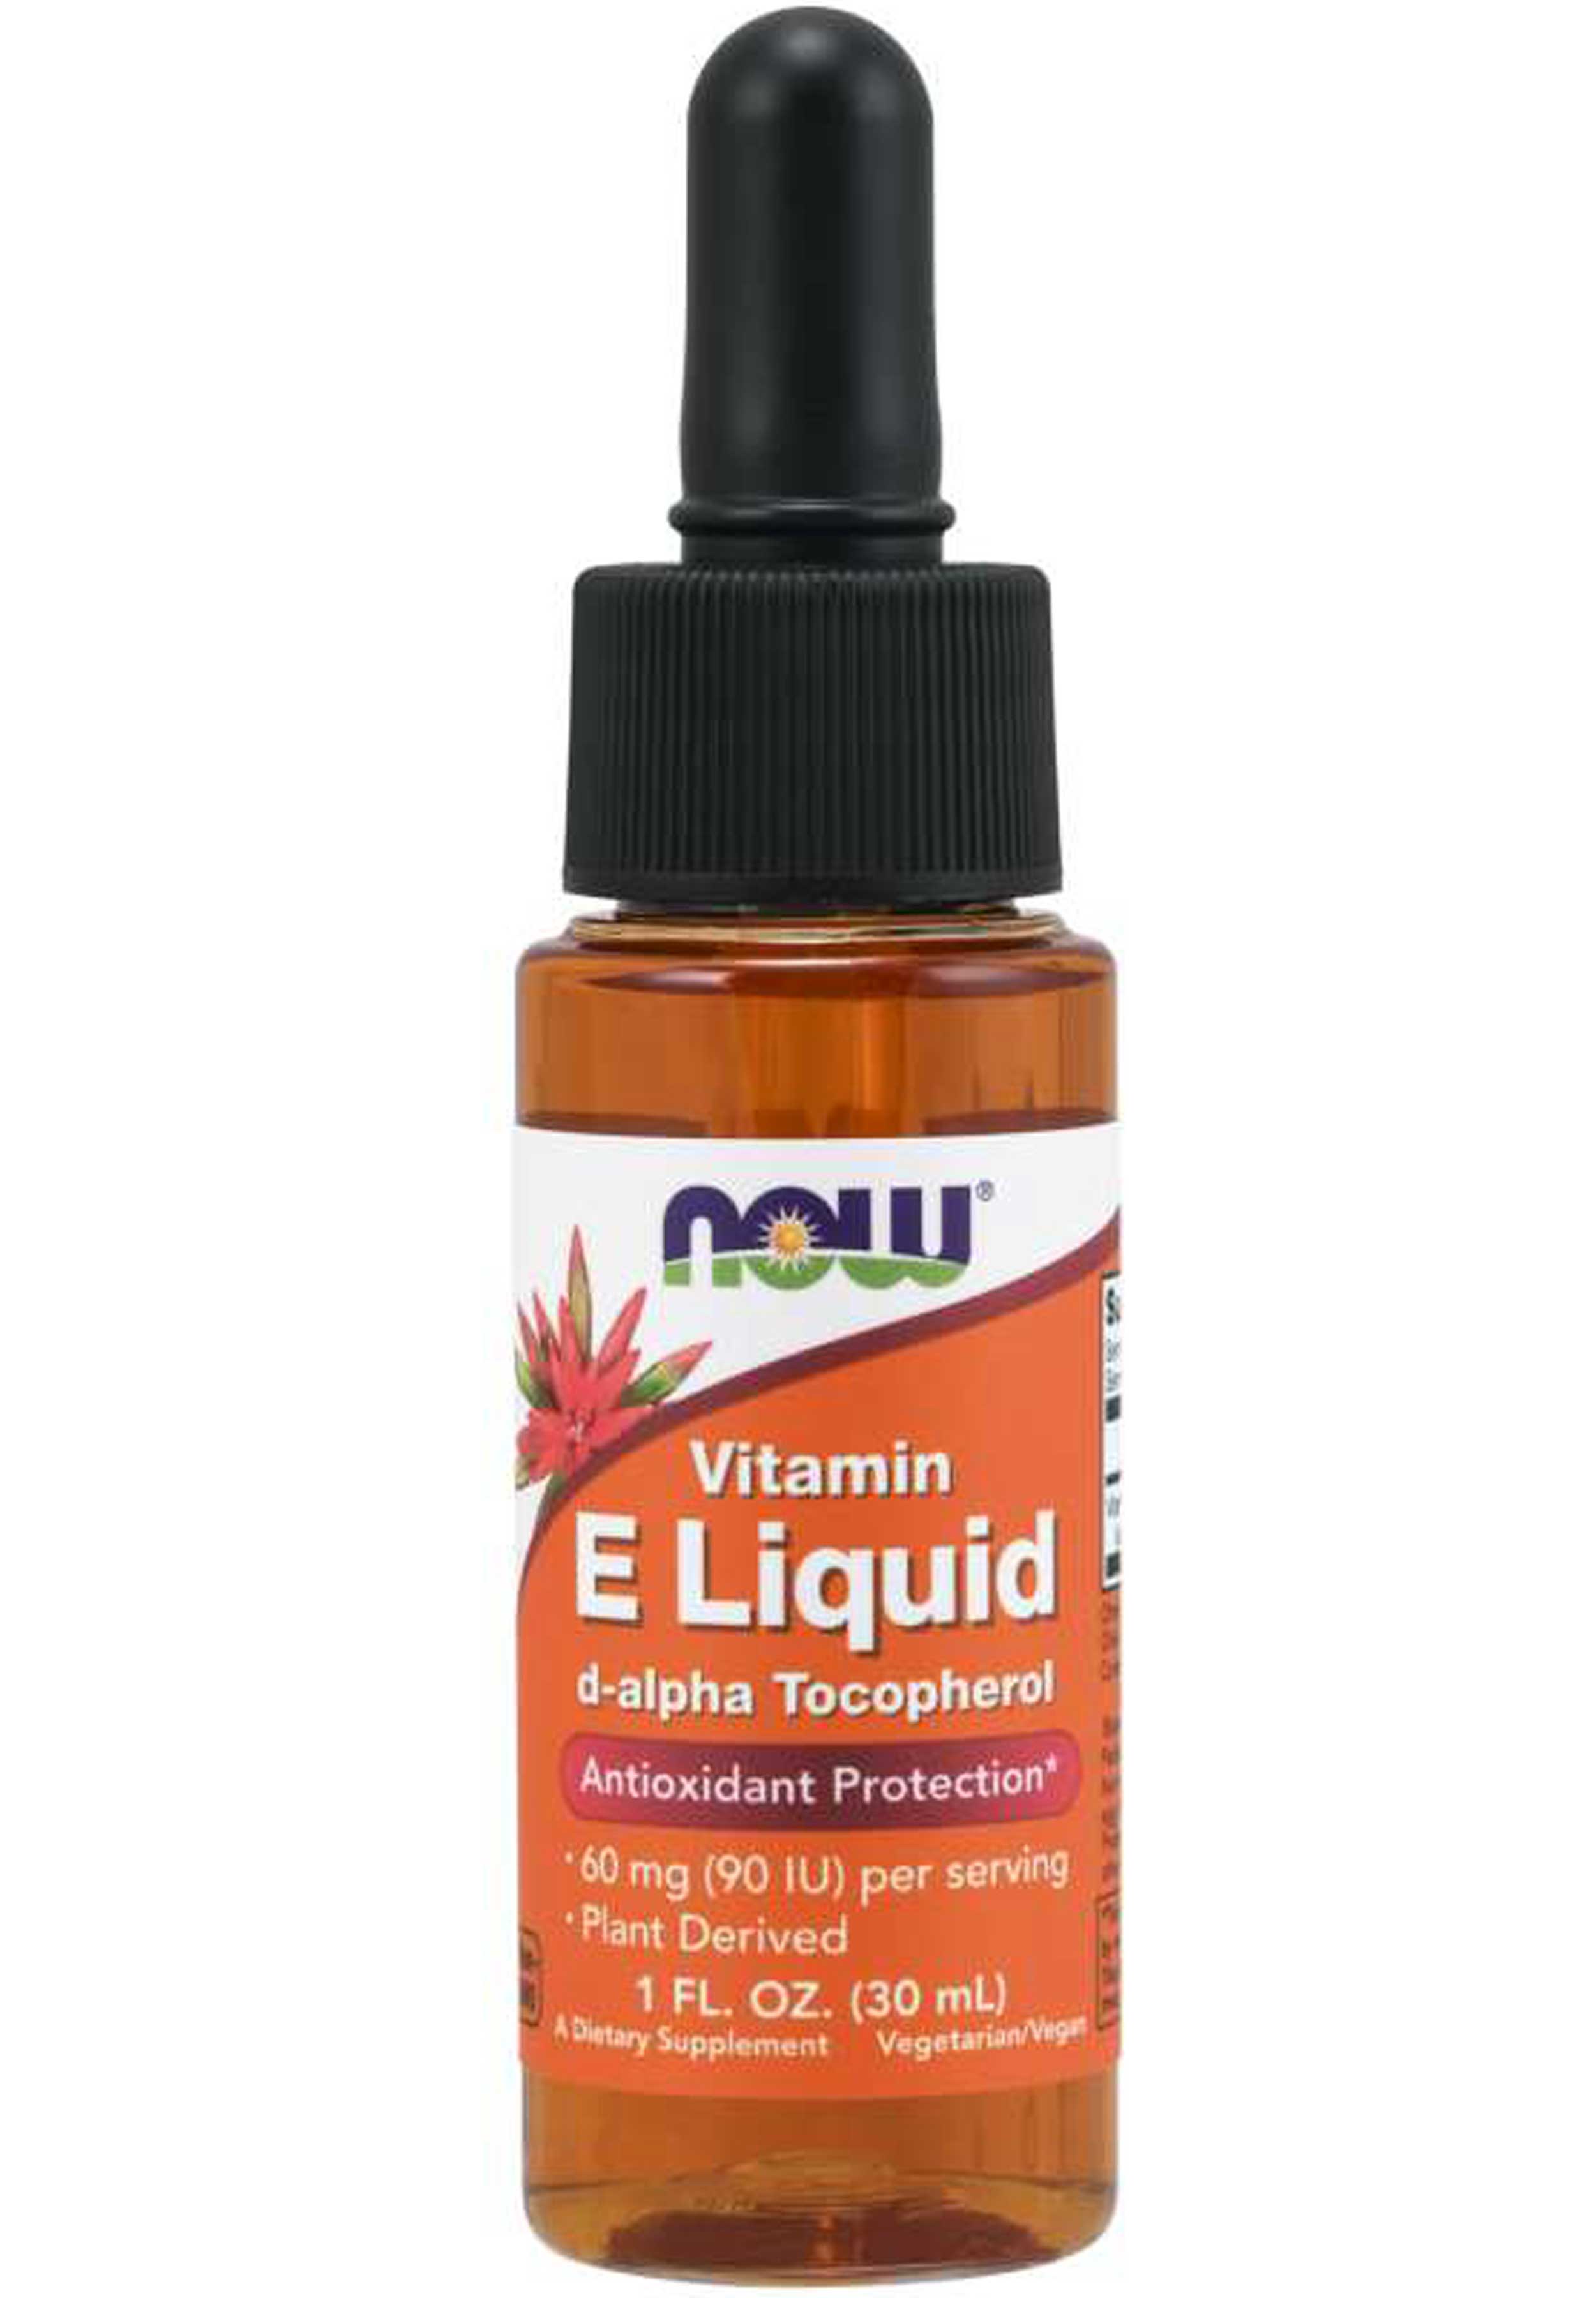 NOW Vitamin E Liquid